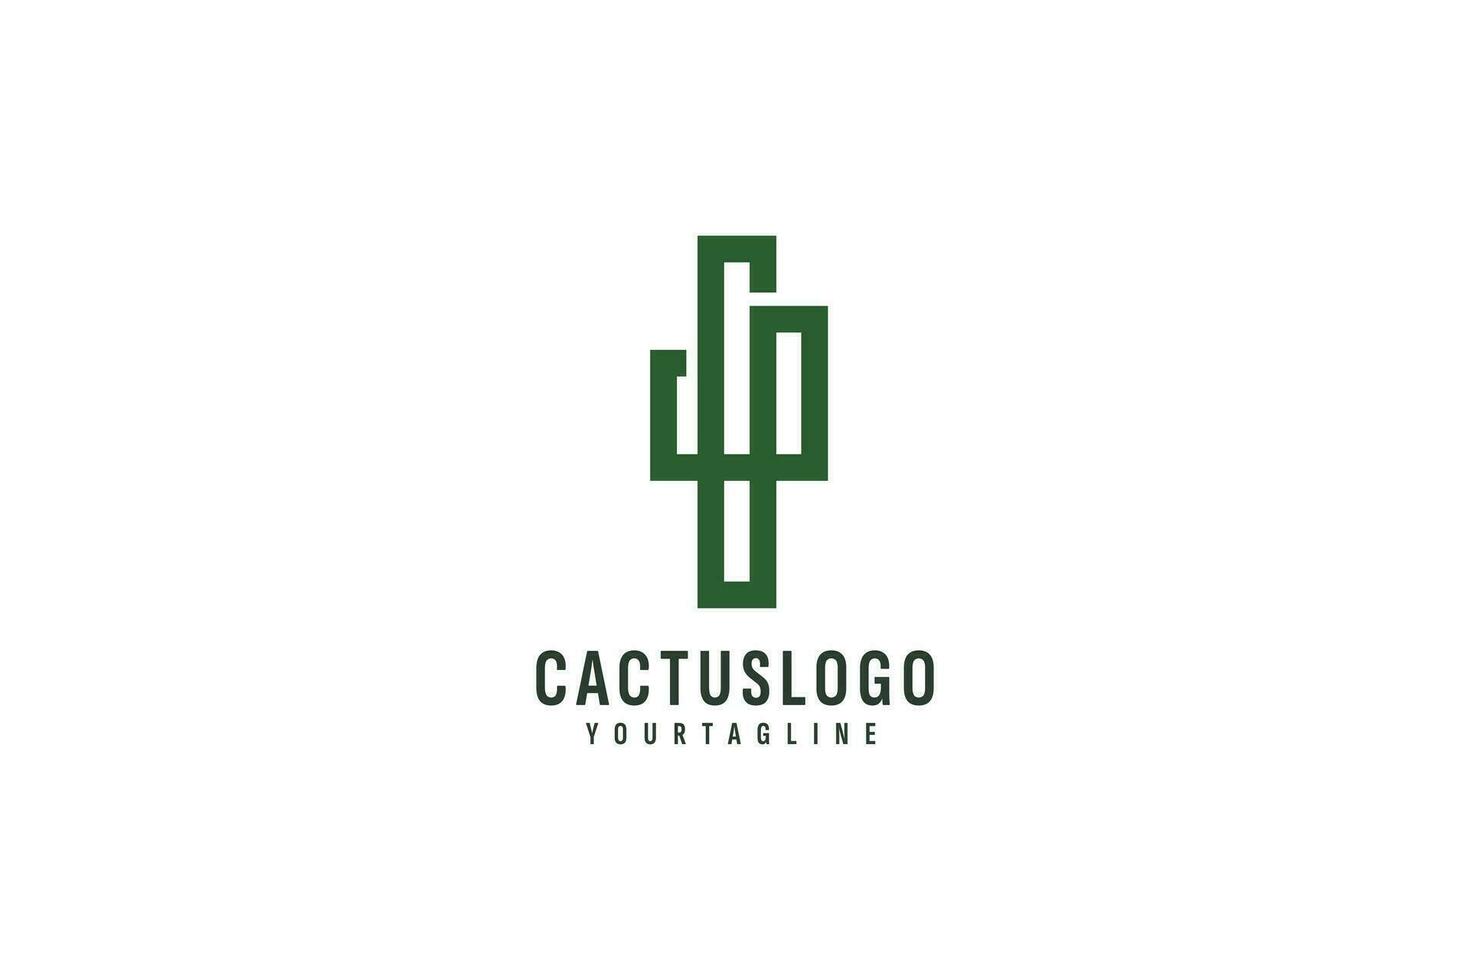 kaktus logotyp vektor ikon illustration